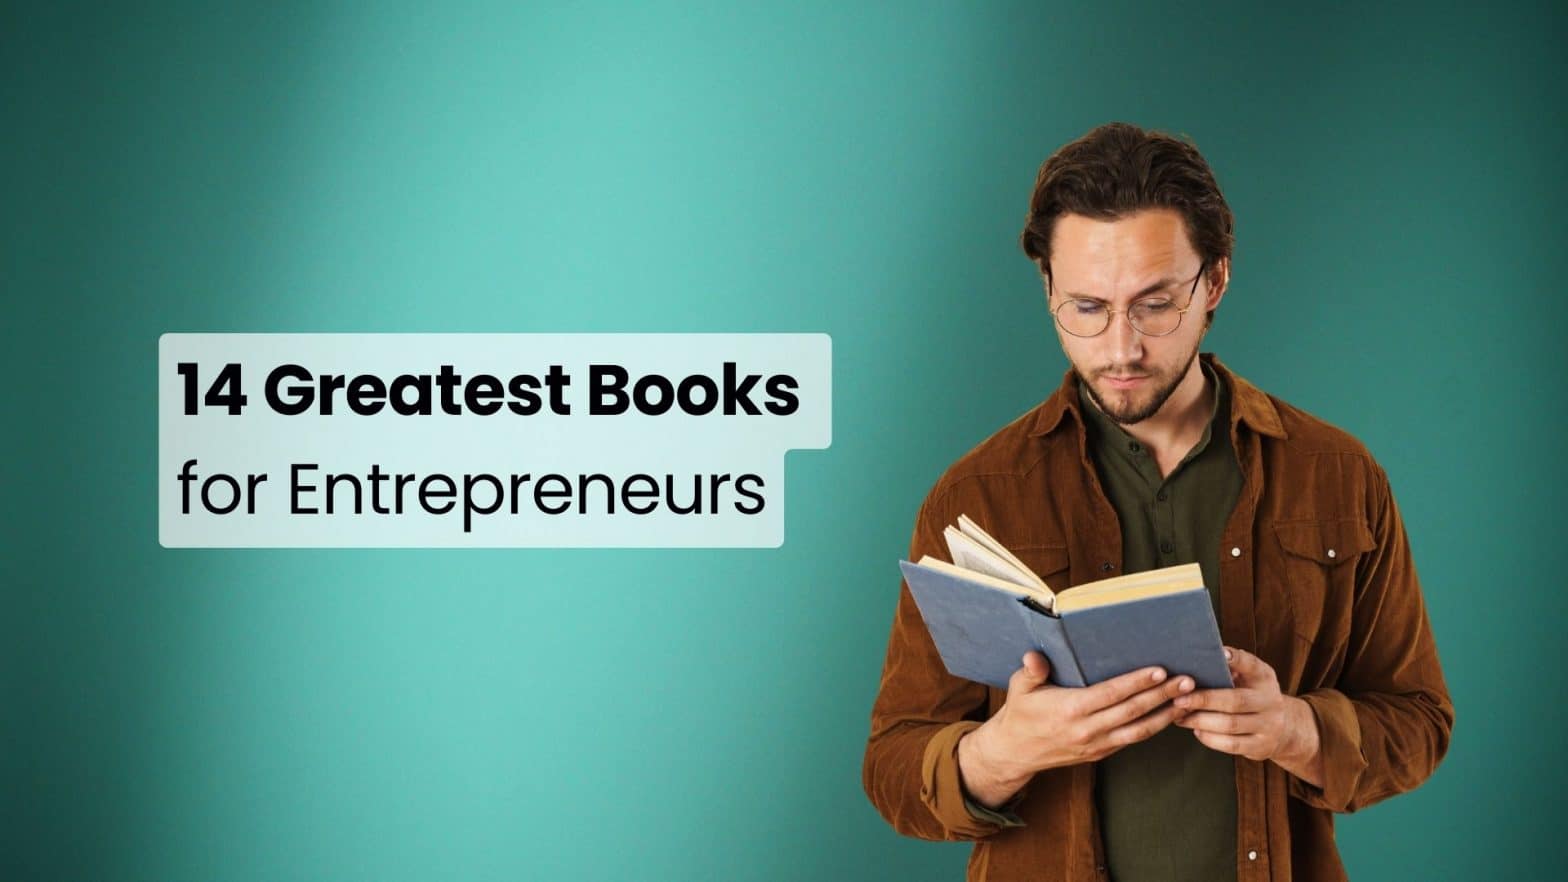 Entrepreneurs reading material